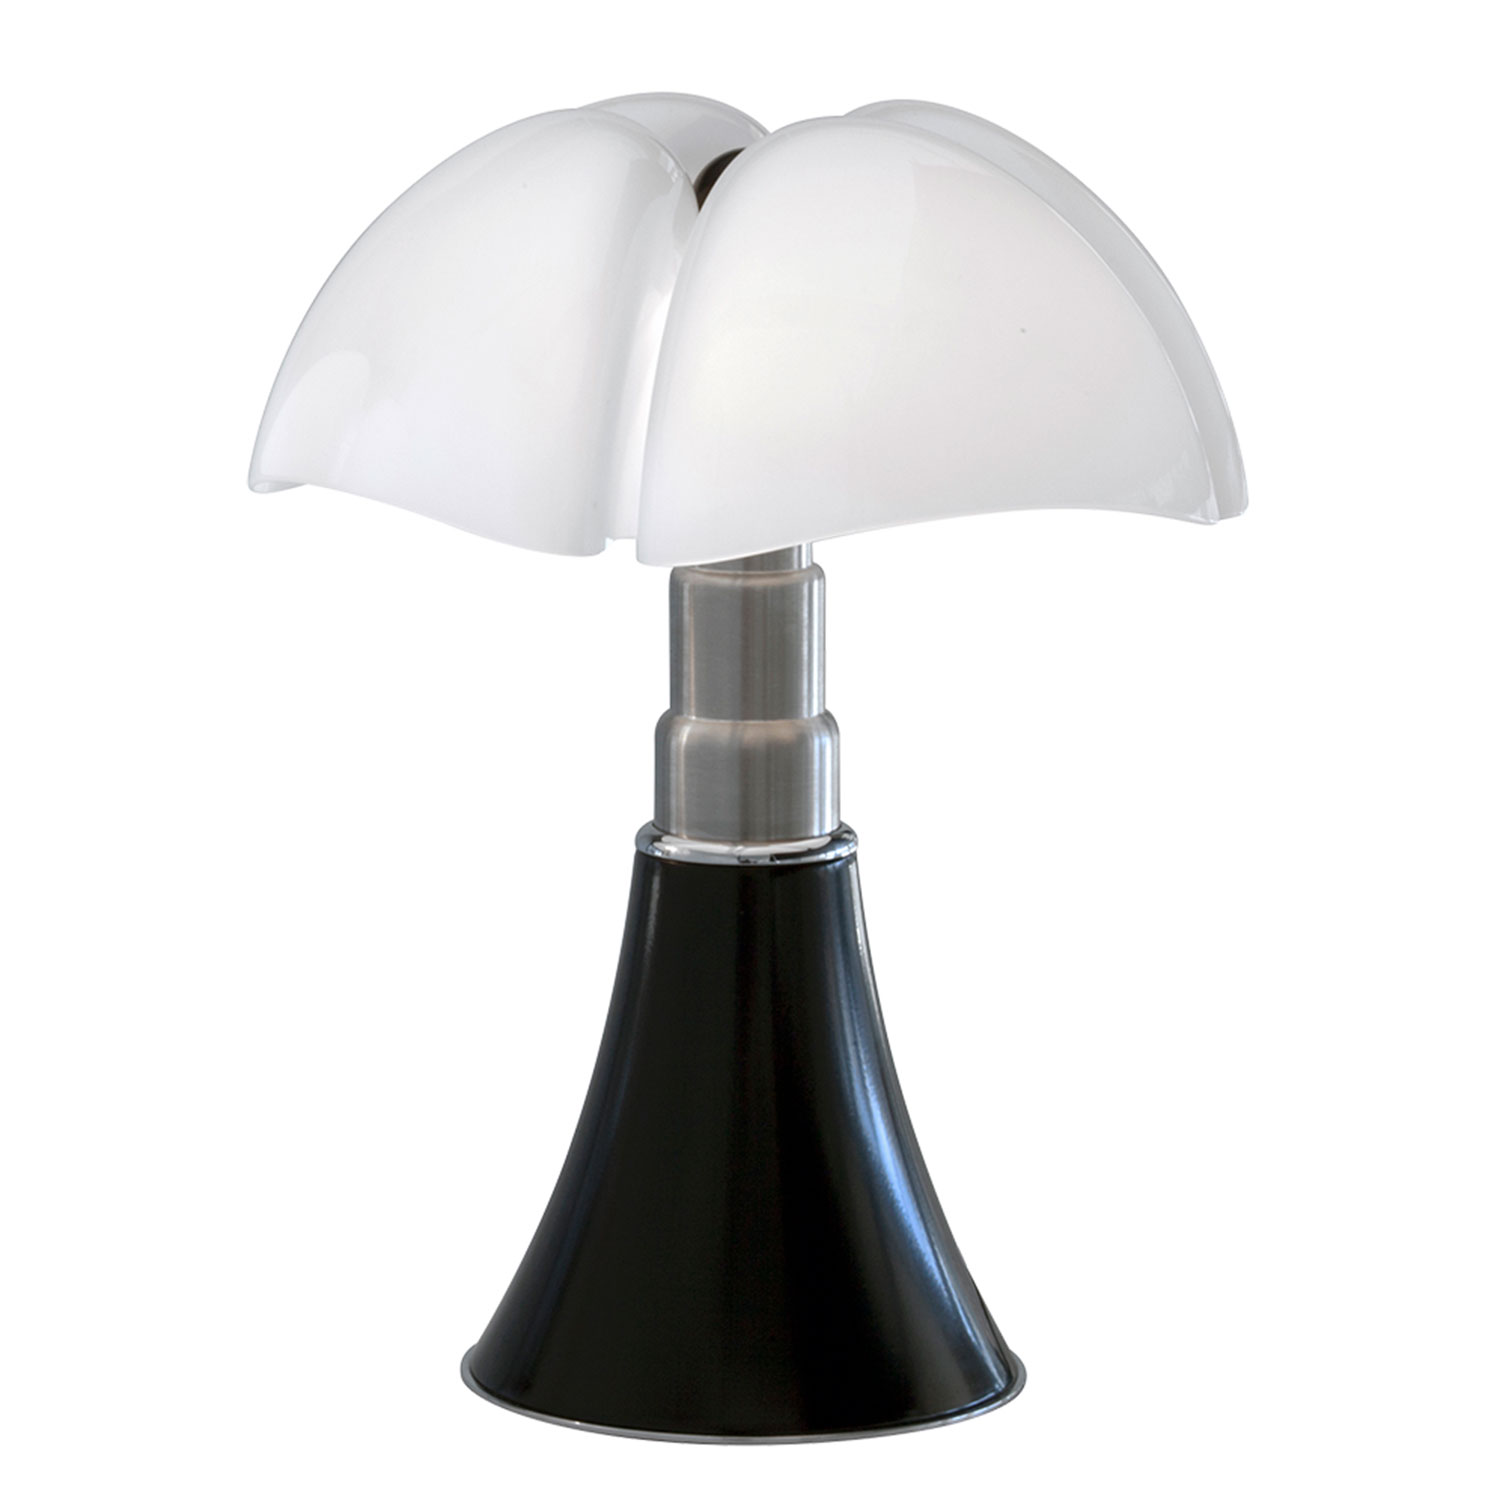 Köp Pipistrello Medium bordslampa från Martinelli Lucé